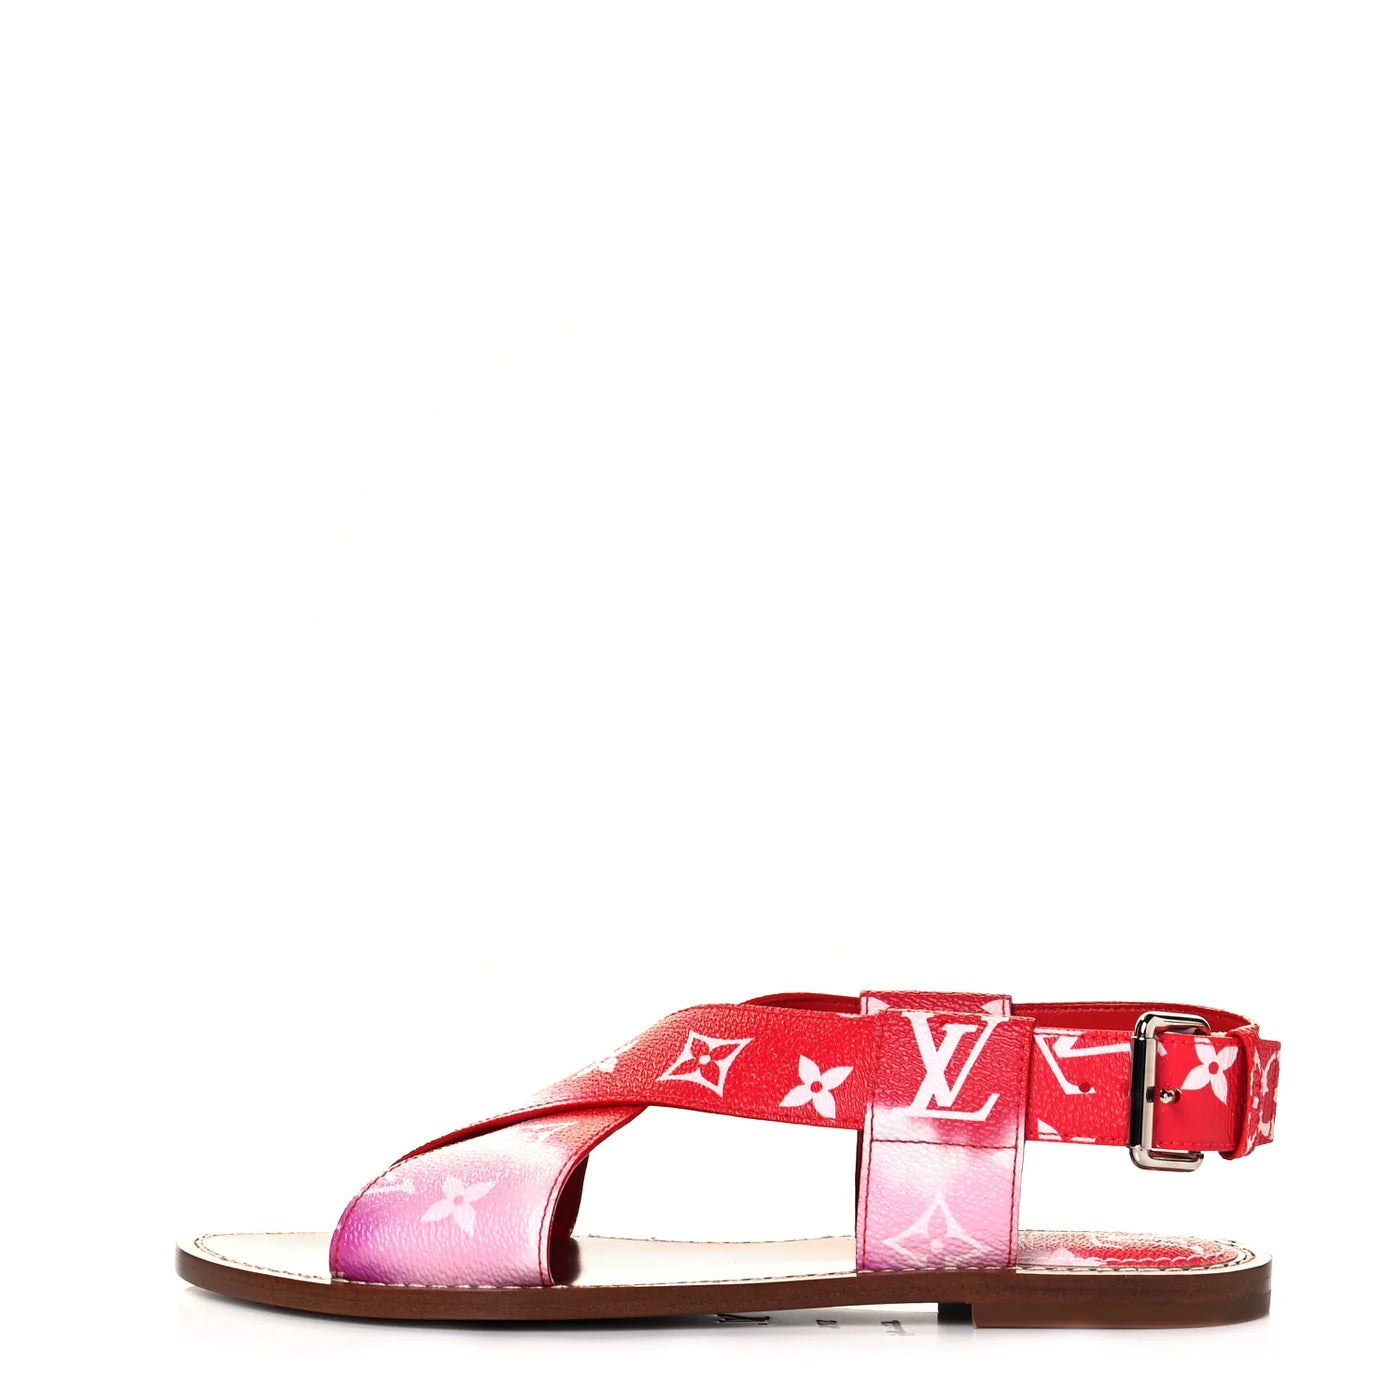 Louis Vuitton Monogram Slide Red/Pink